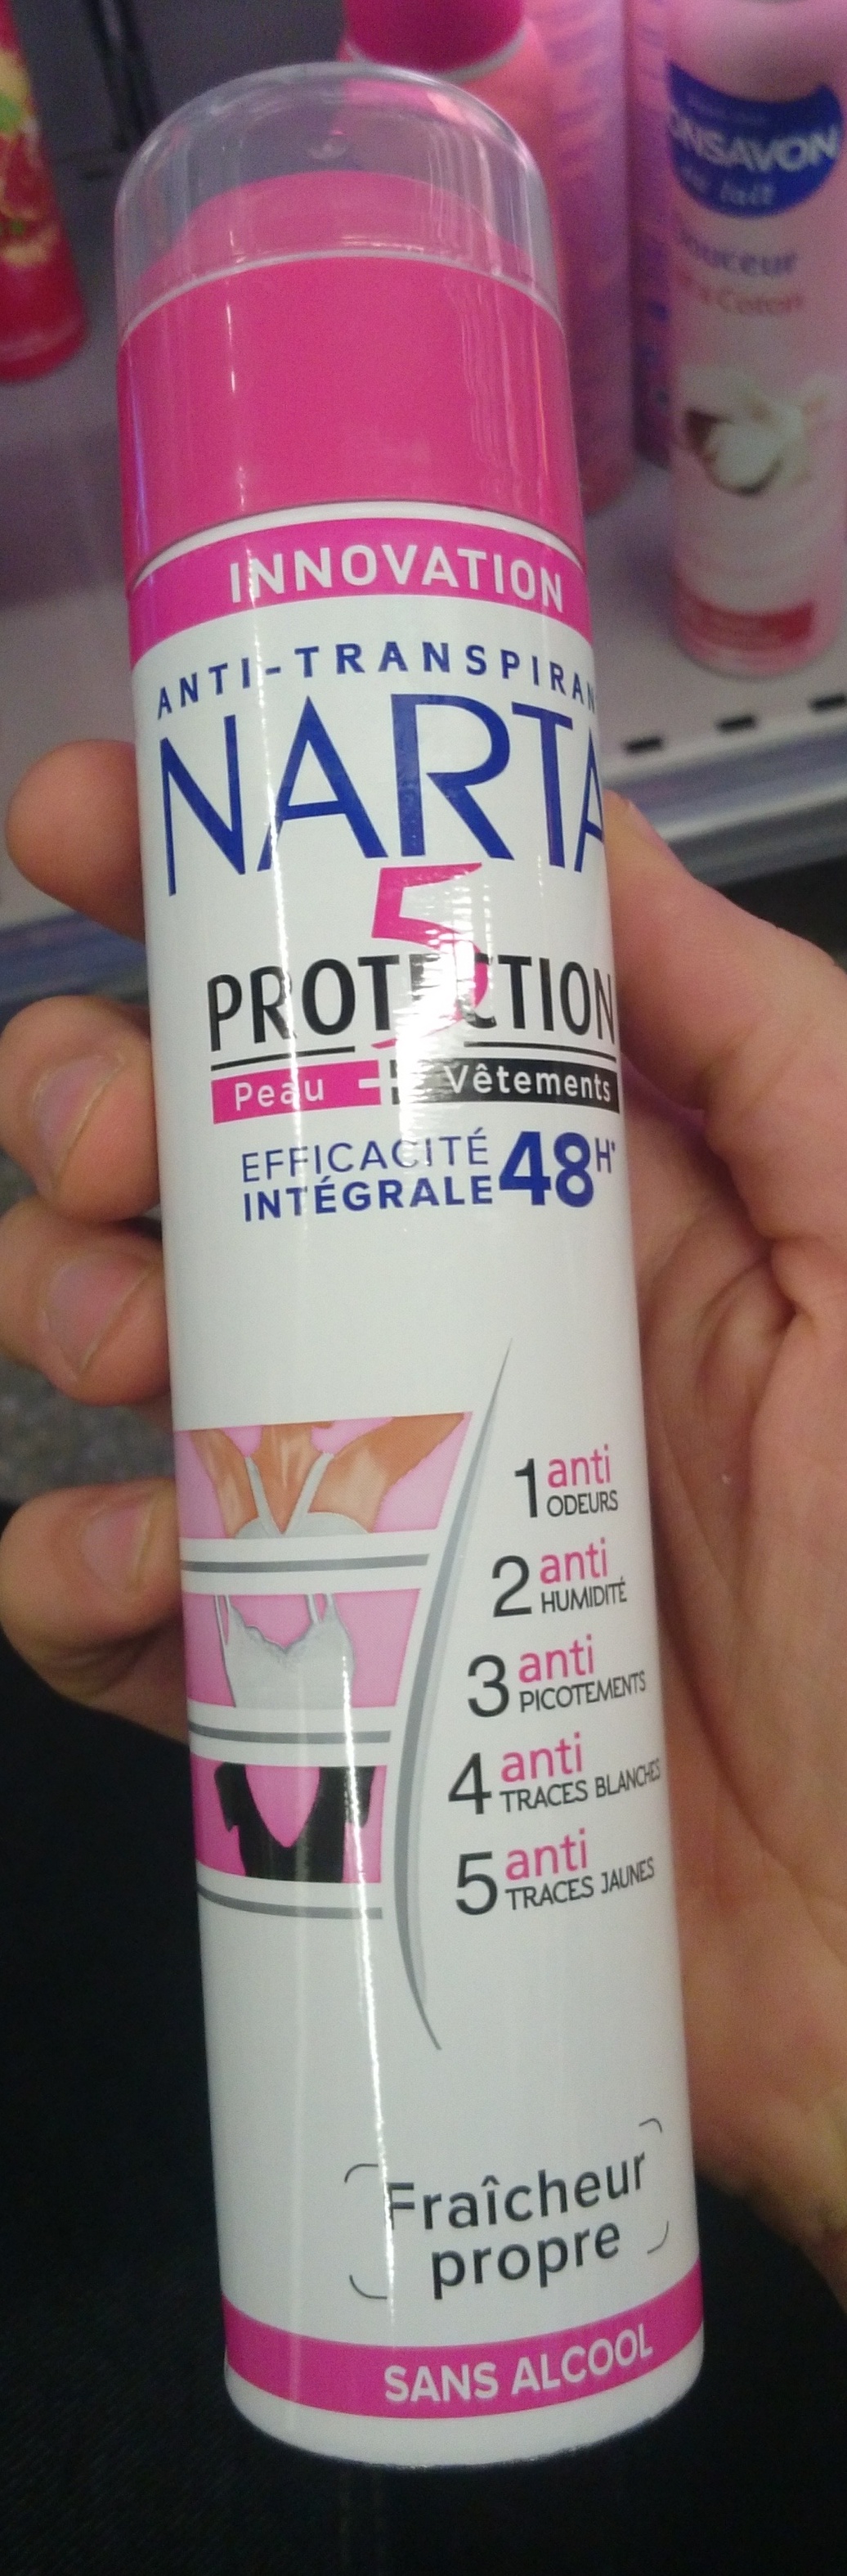 5 protections efficacité intégrale 48h - 製品 - fr